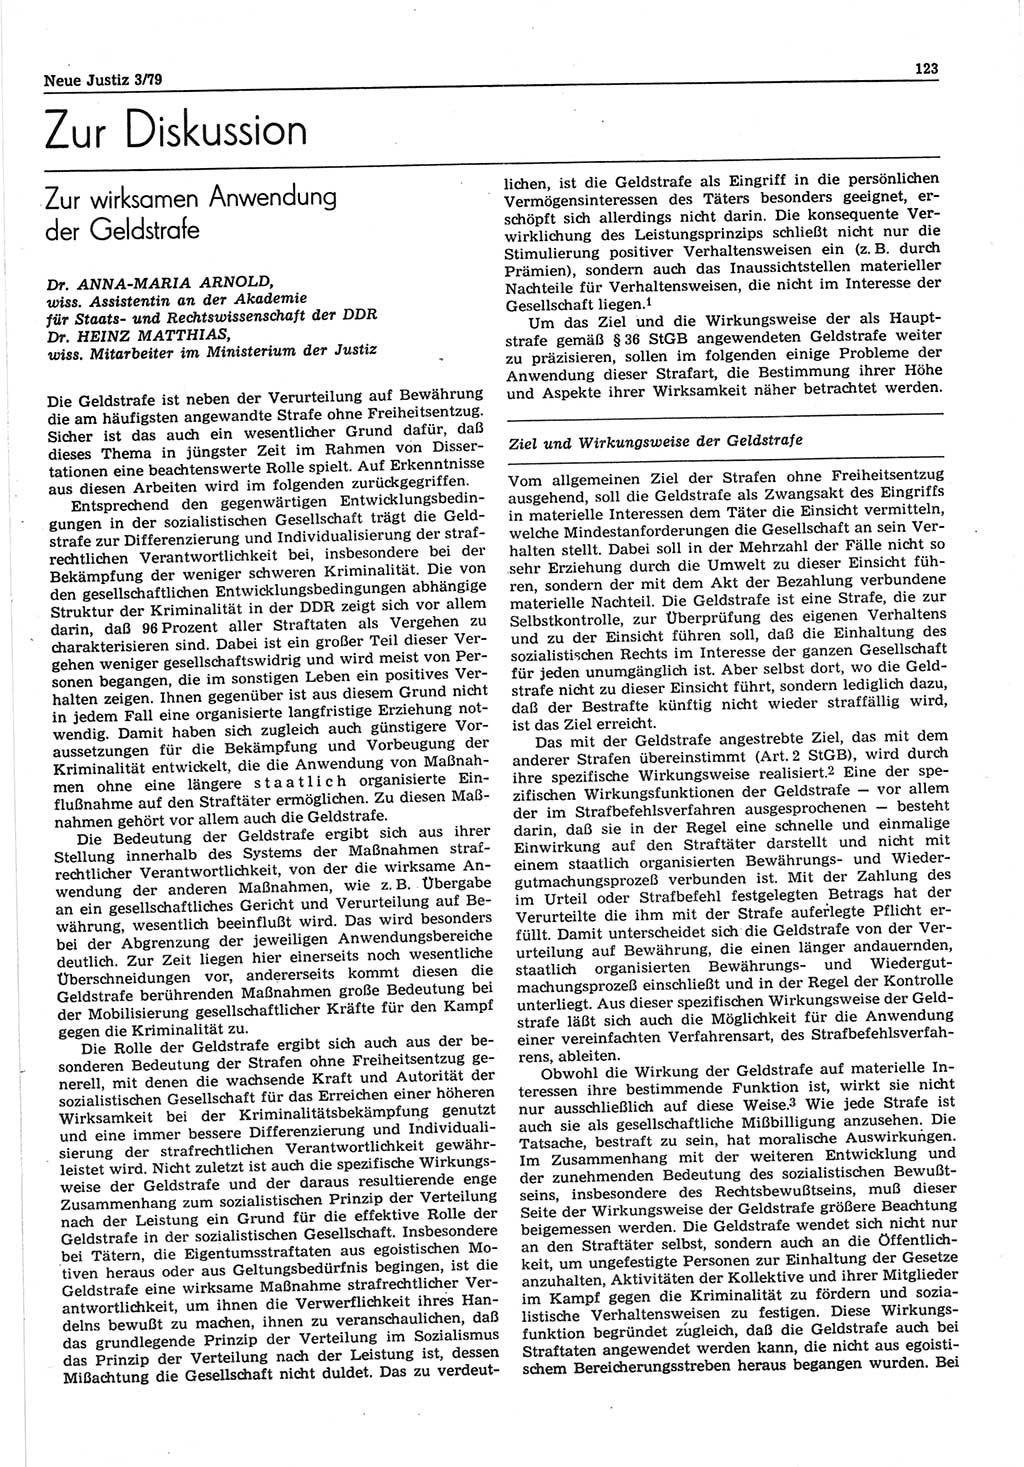 Neue Justiz (NJ), Zeitschrift für sozialistisches Recht und Gesetzlichkeit [Deutsche Demokratische Republik (DDR)], 33. Jahrgang 1979, Seite 123 (NJ DDR 1979, S. 123)